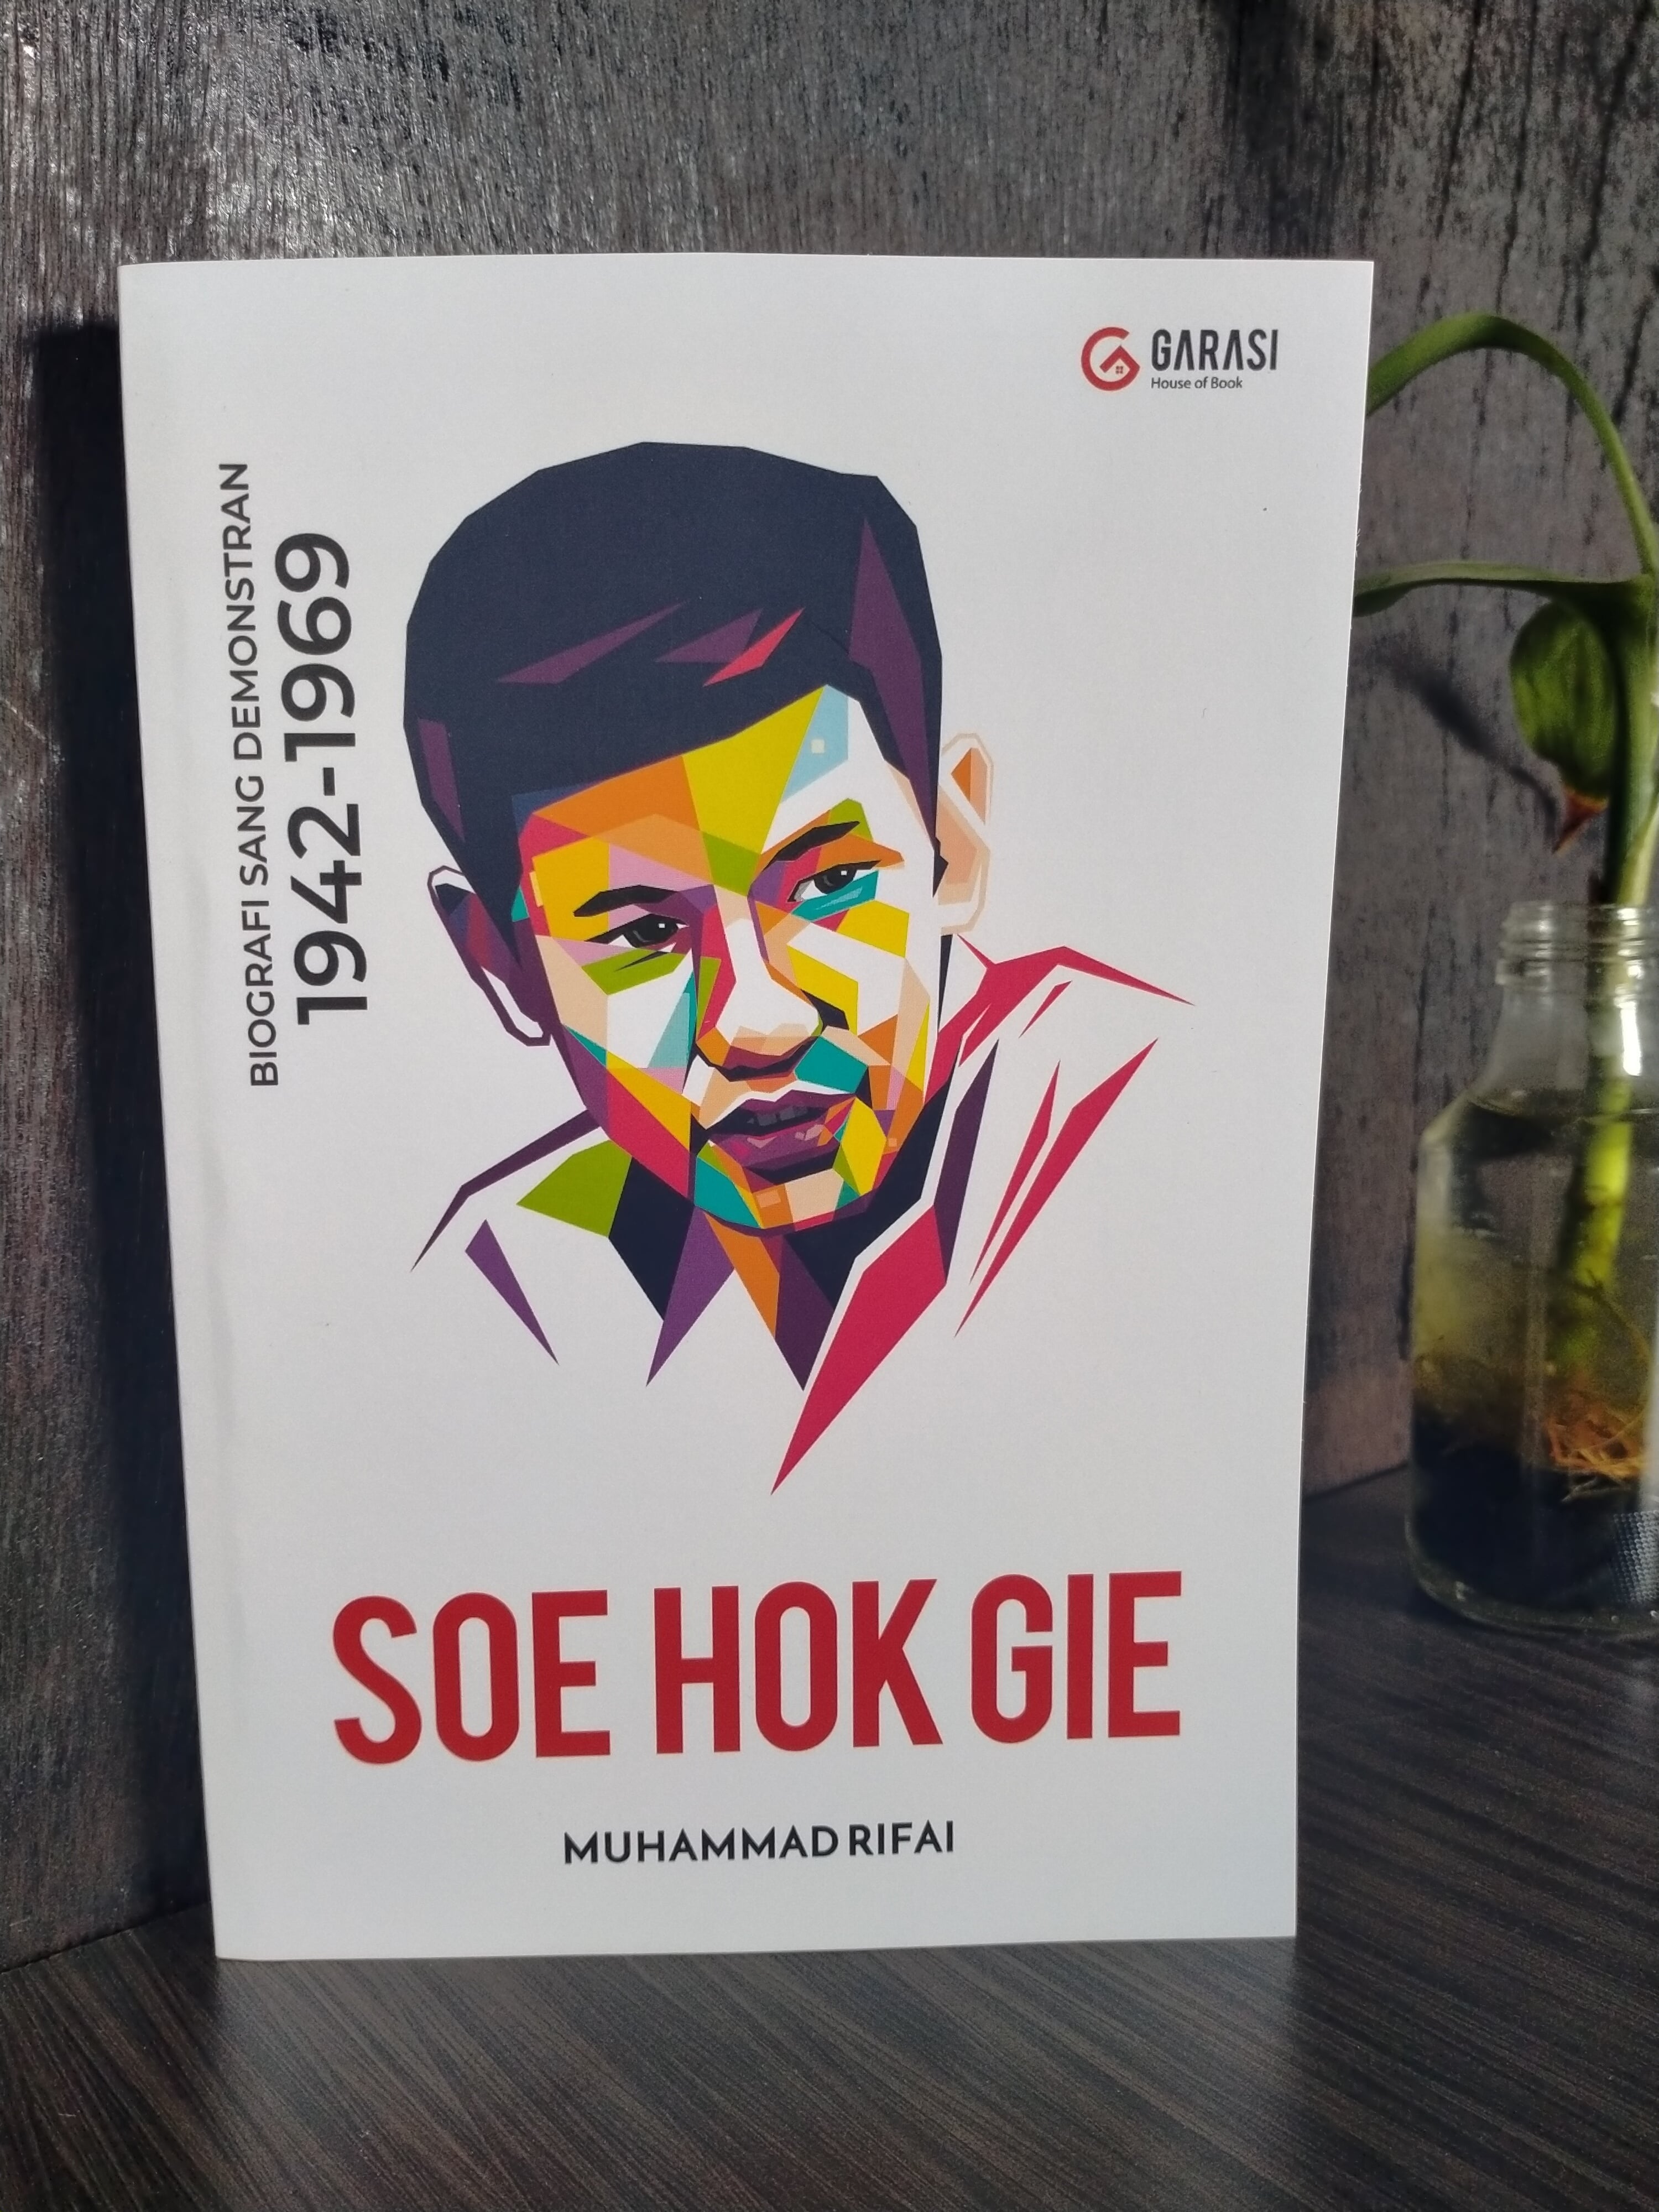 Biografi Soe Hok Gie: Perjalanan Hidup dan Pemikiran Aktivis Inspiratif